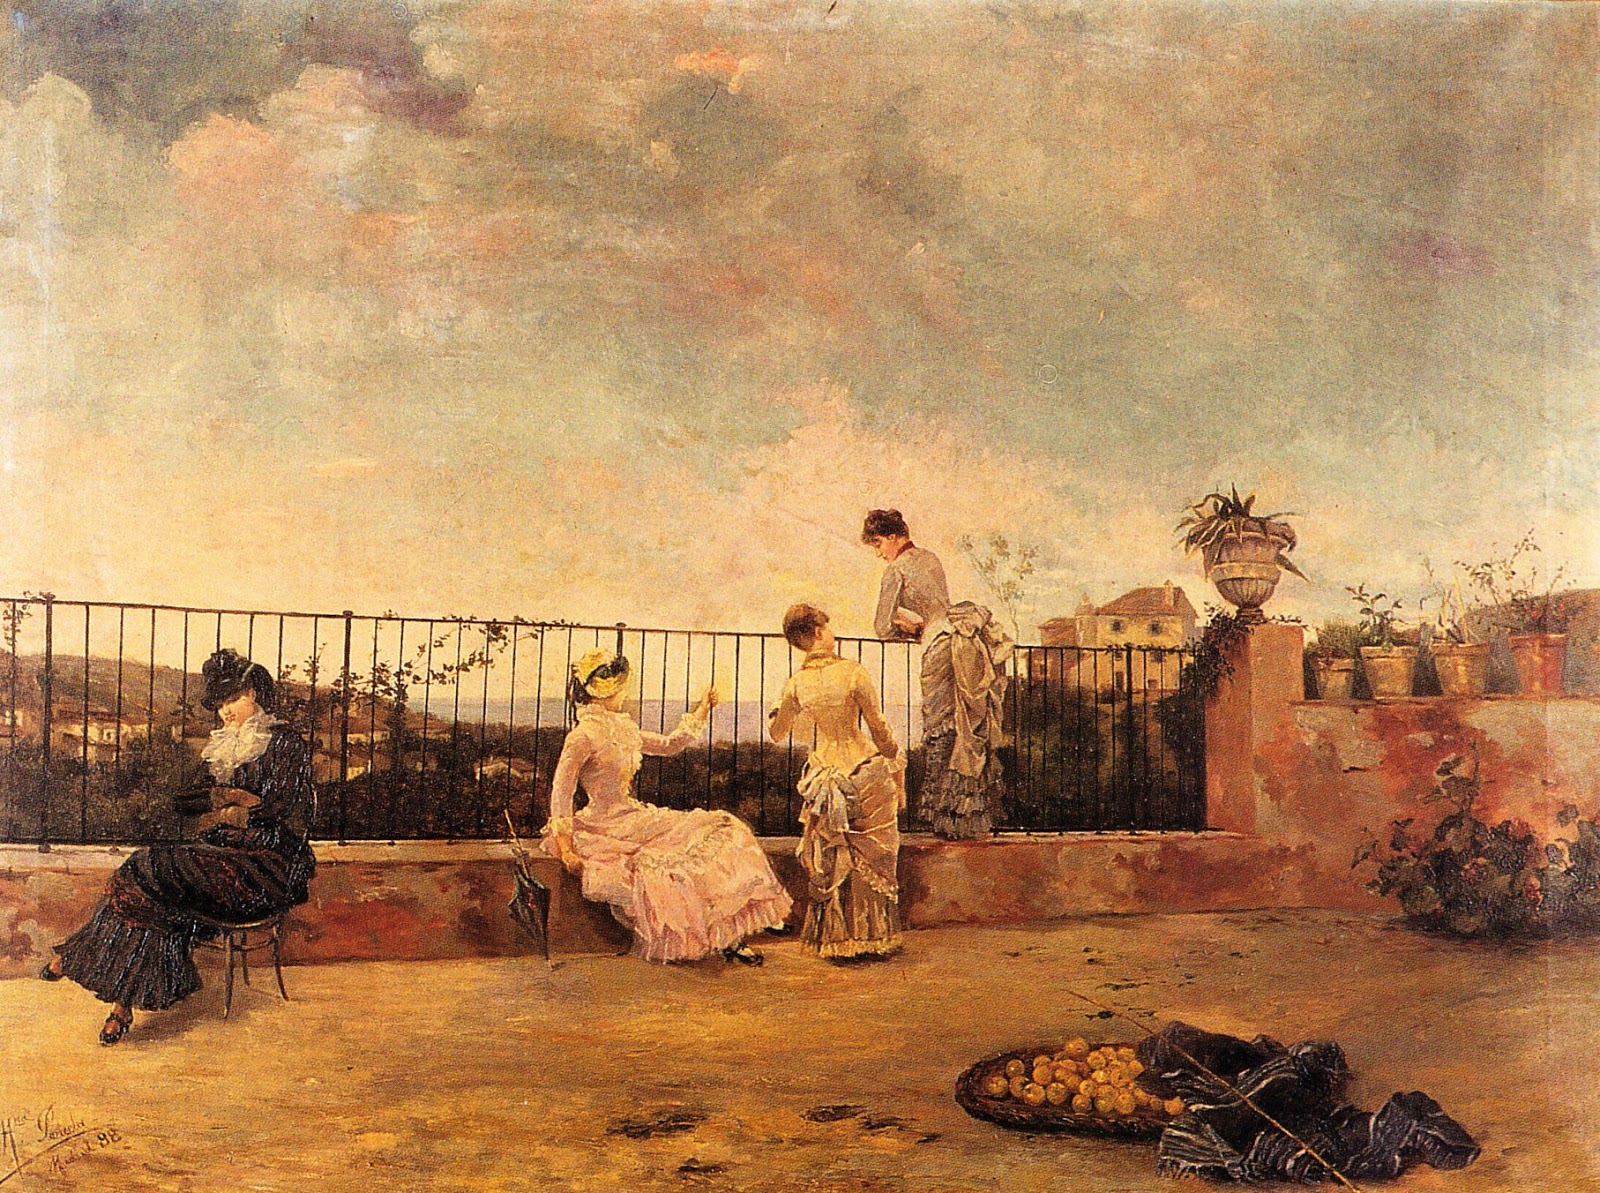 Marcelina Poncela Hontoria, ¡No vienen! (1888).